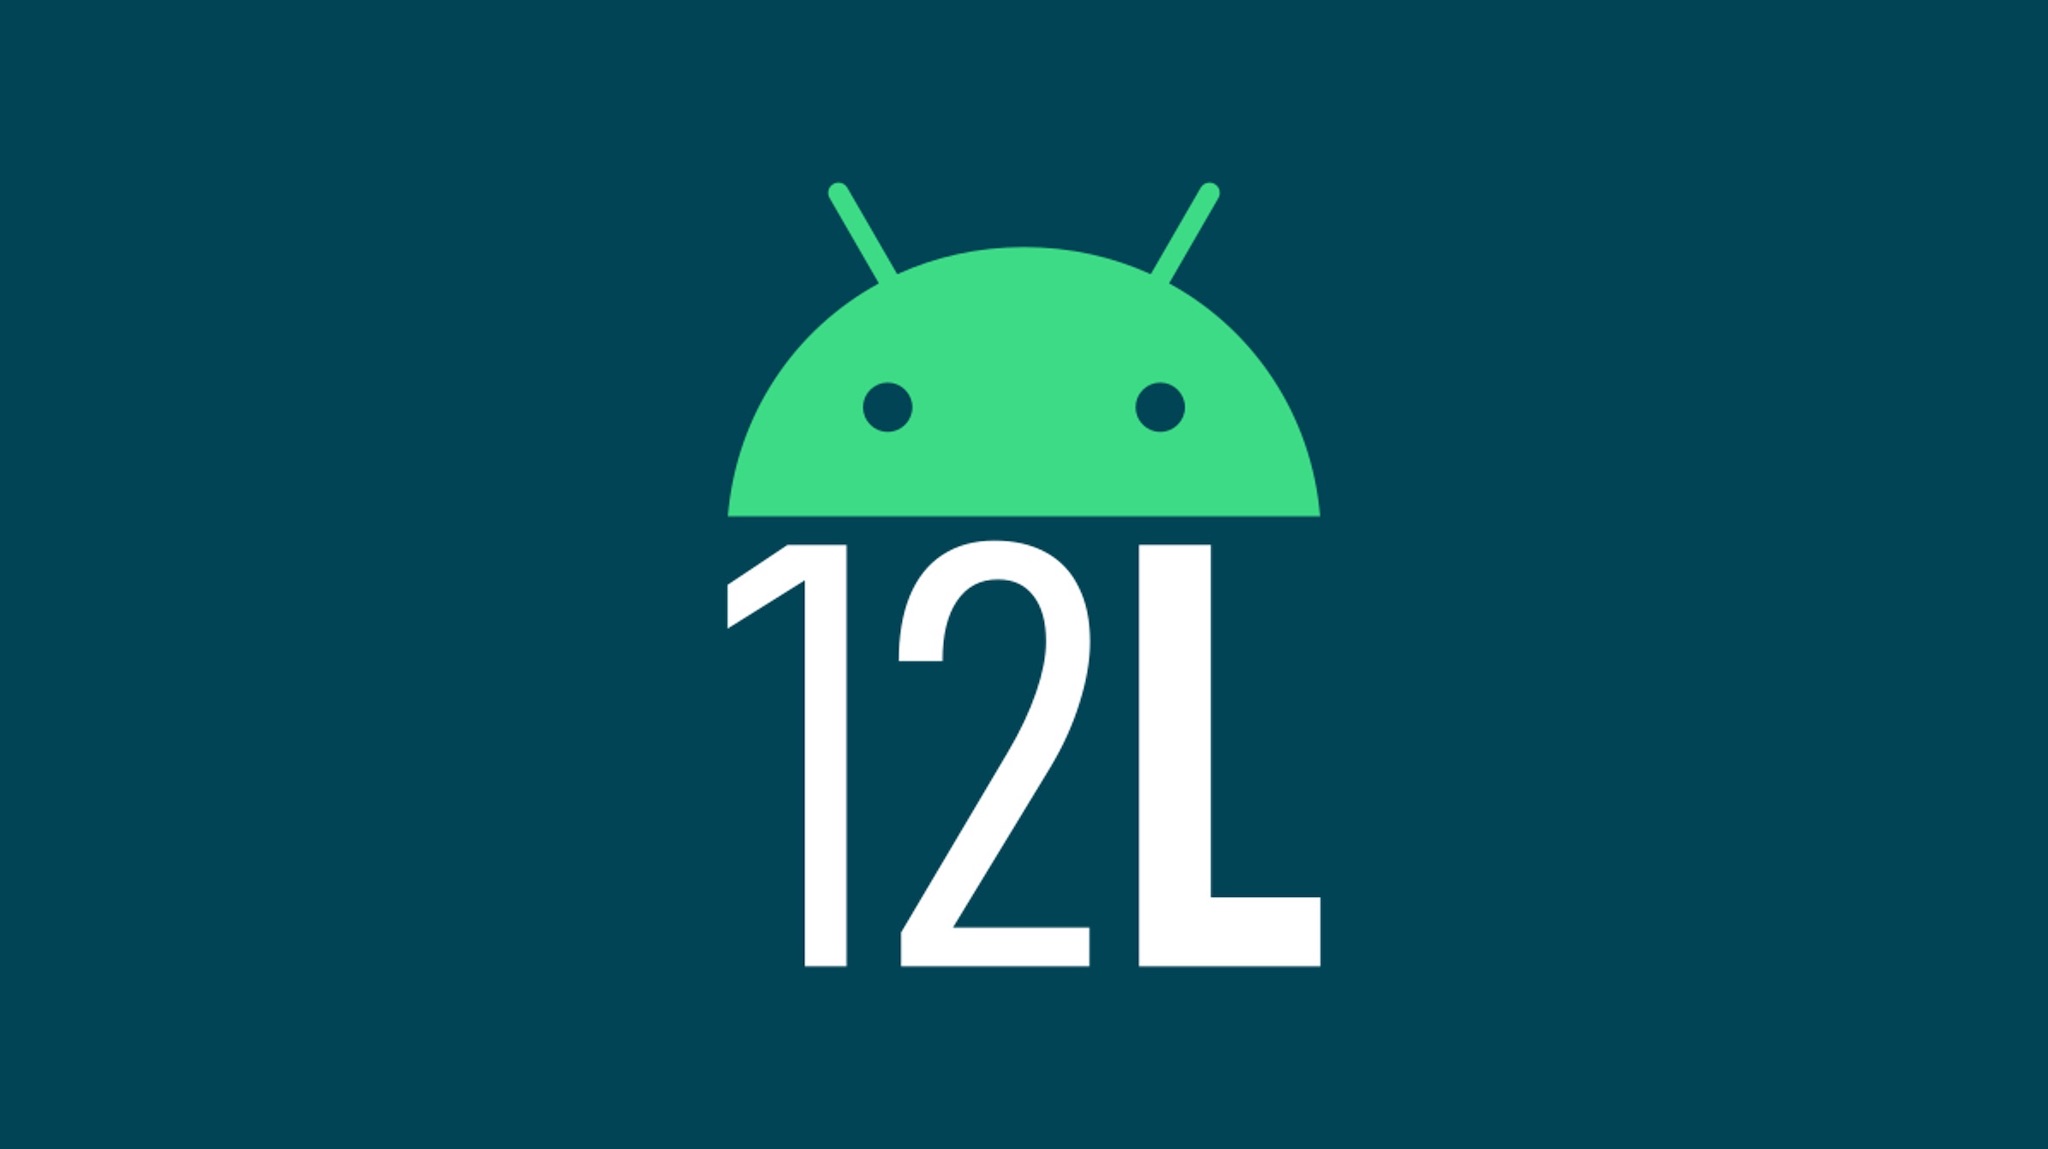 Google cập nhật Android 12L beta 2 cho các thiết bị Pixel, anh em muốn trải nghiệm thì lên nhé